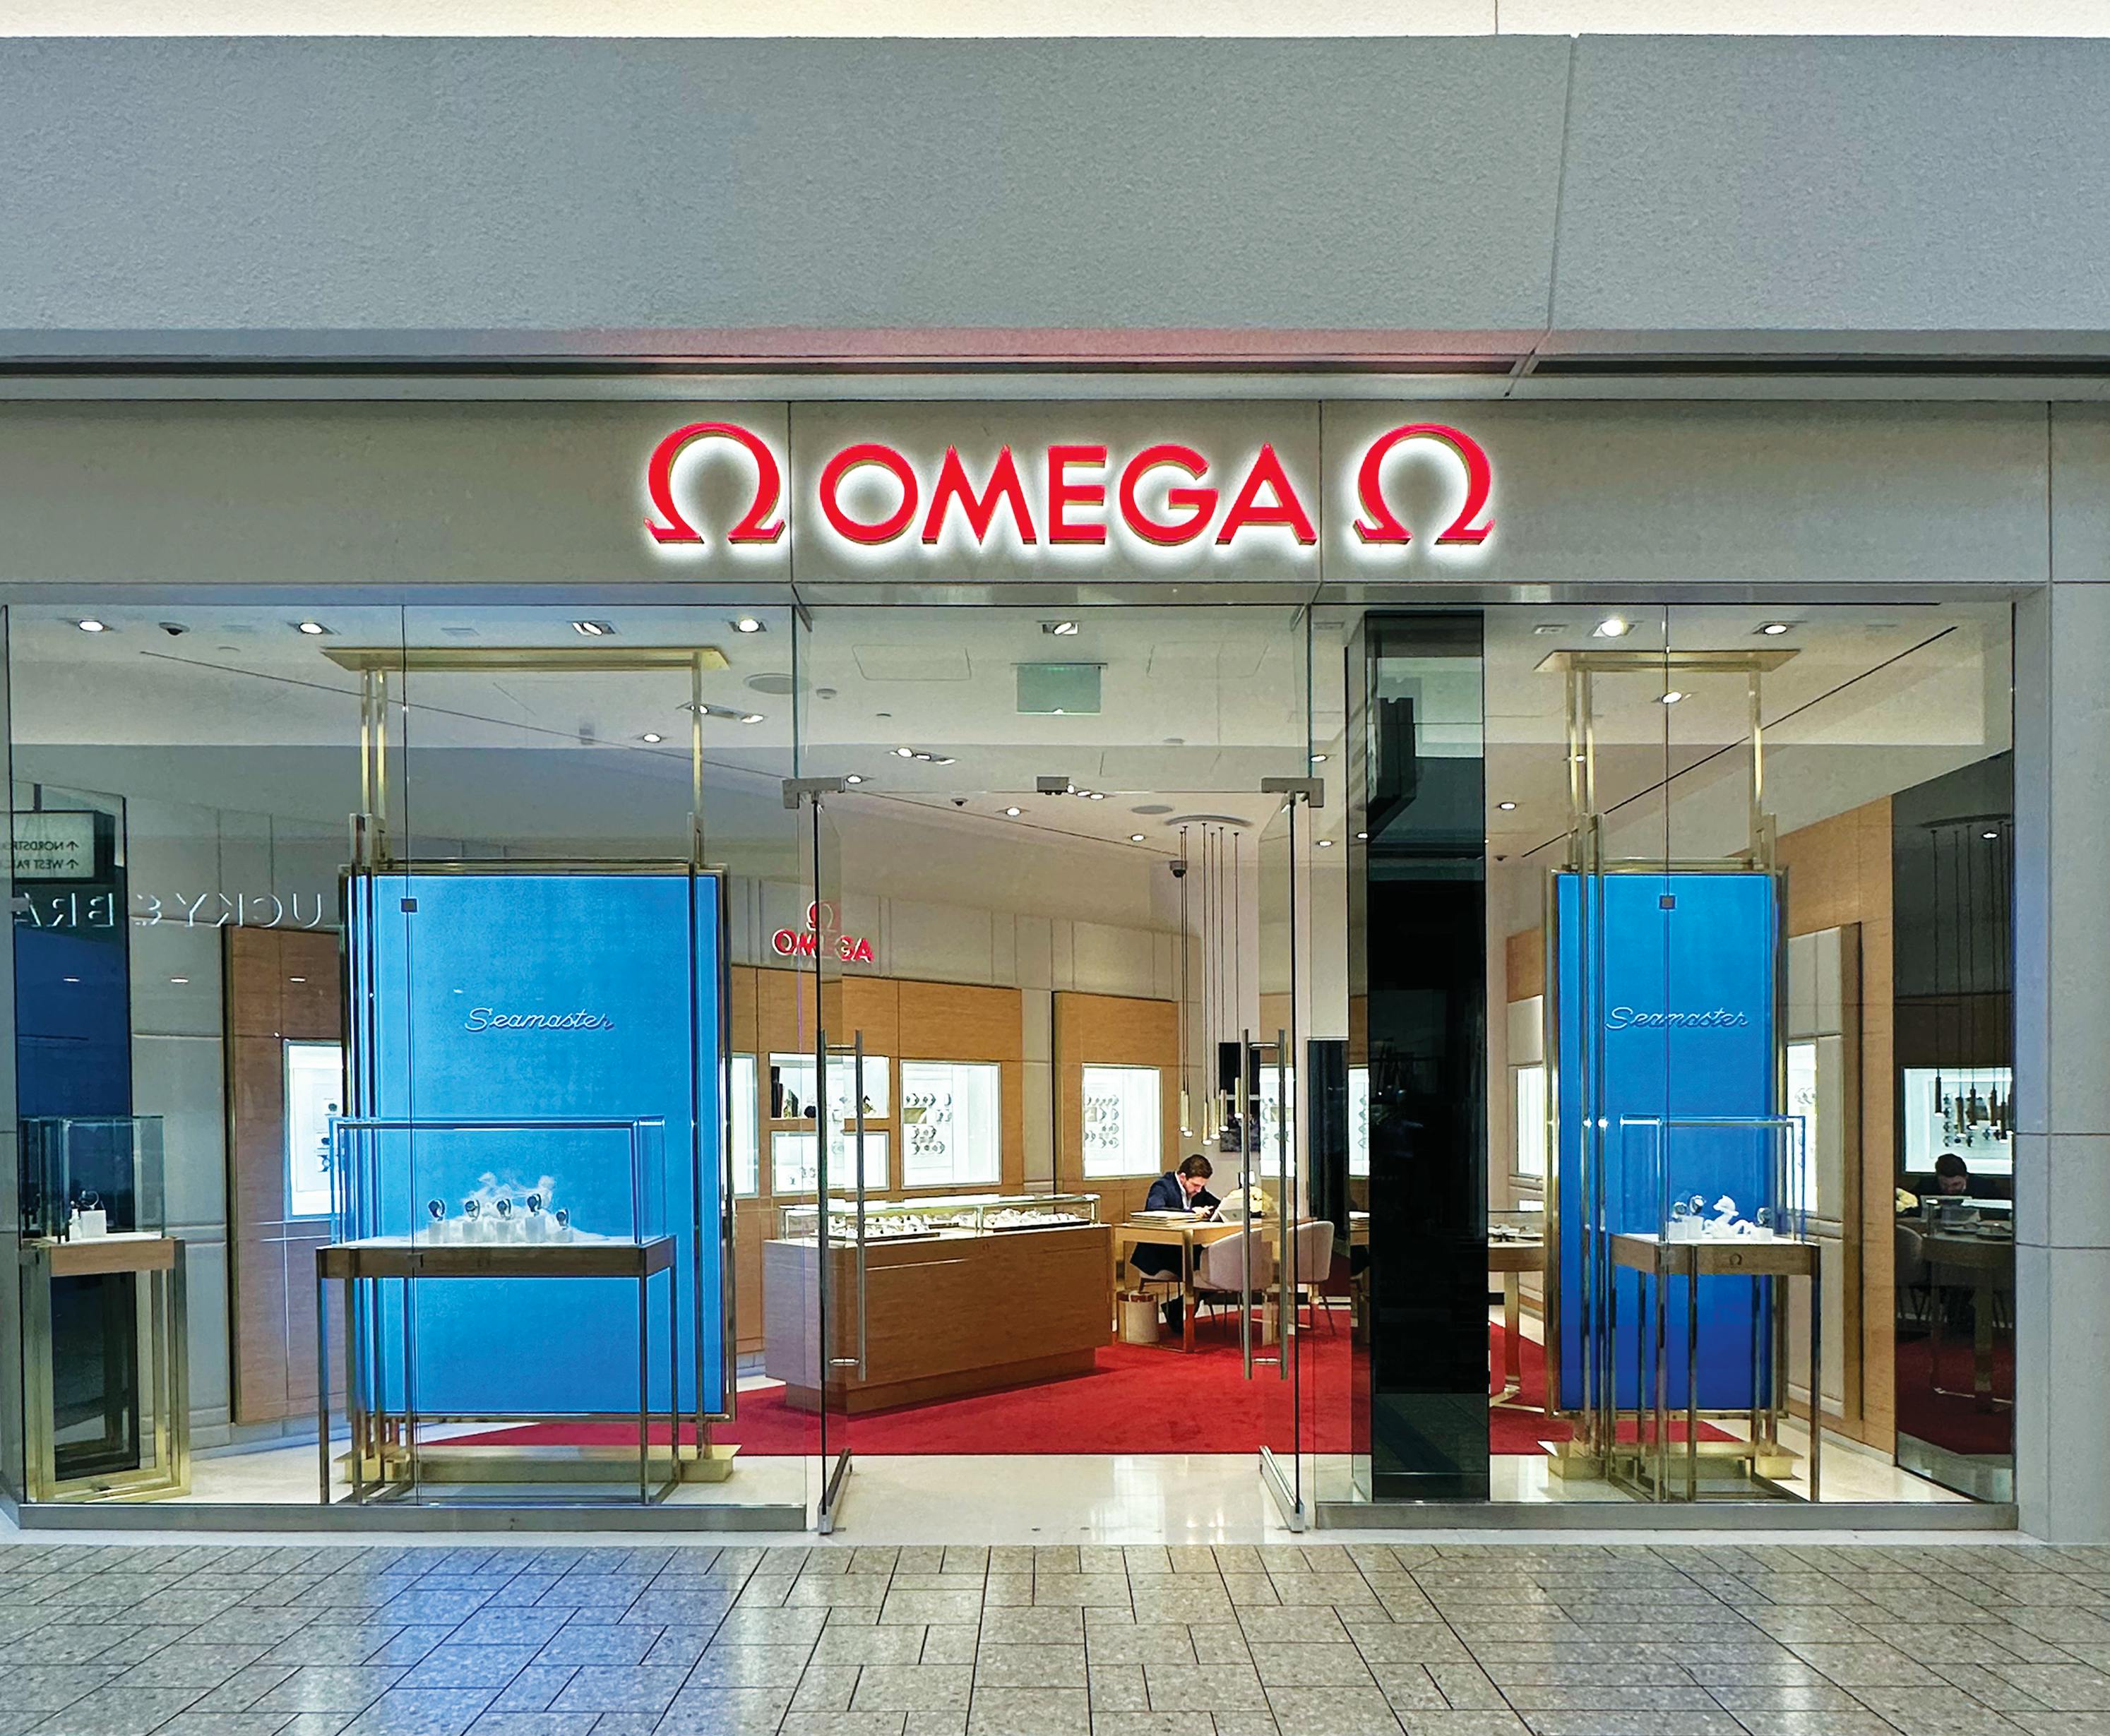 Denver (Omega Boutique) storefront